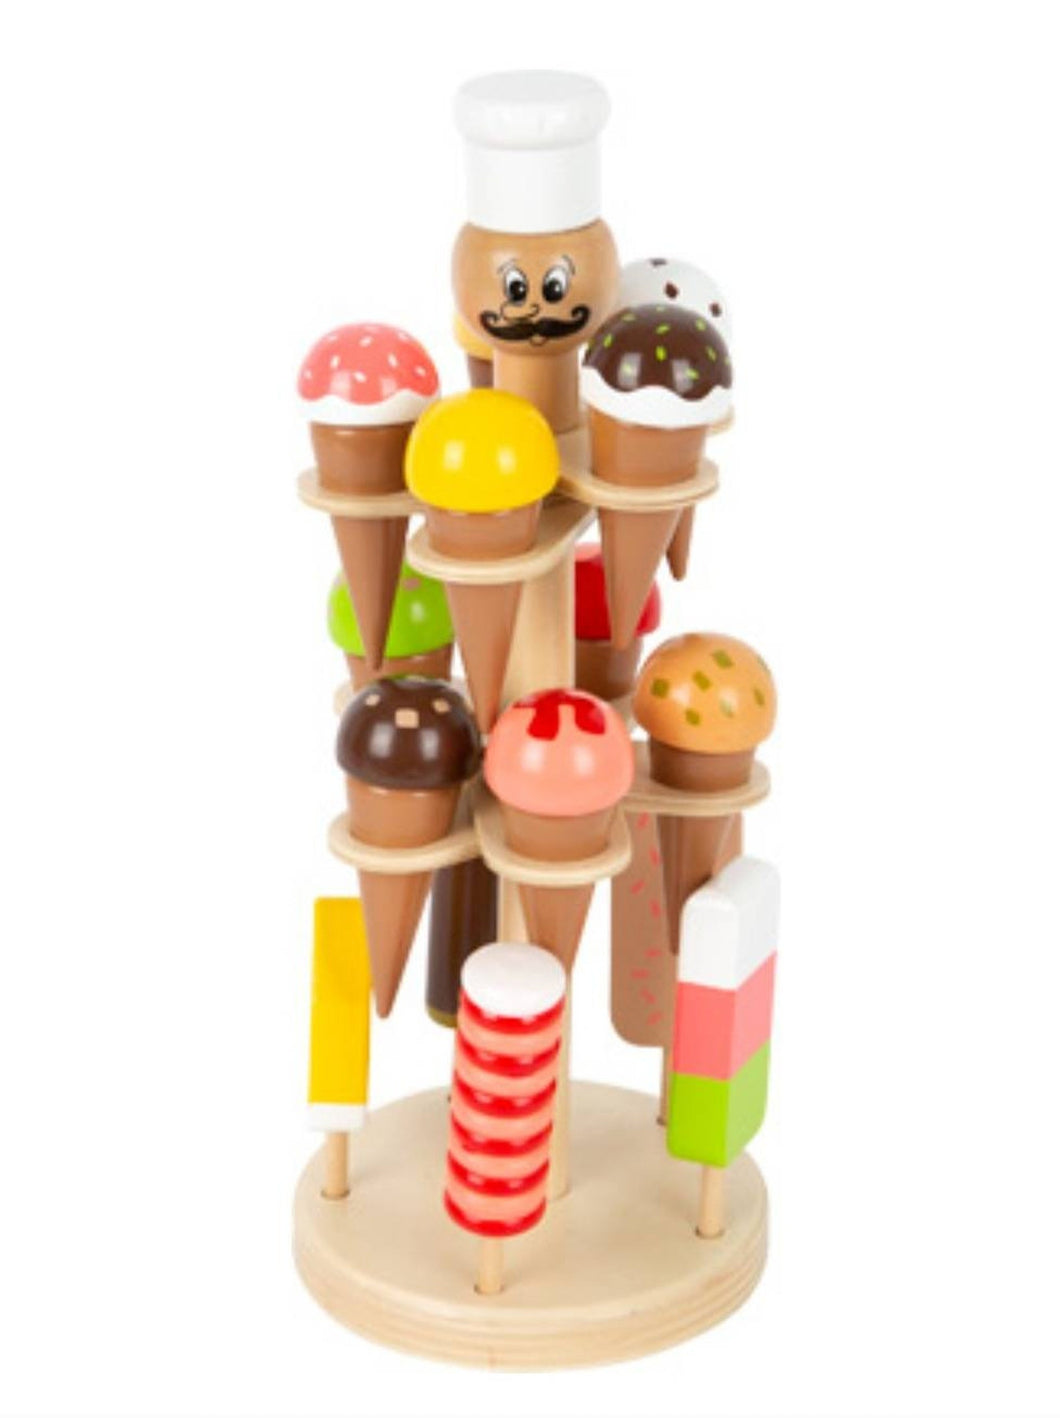 Παιδικό σταντ με παγωτά, ξύλινο παιχνίδι ρόλων με 16 τεμάχια, Luigi παγωτά